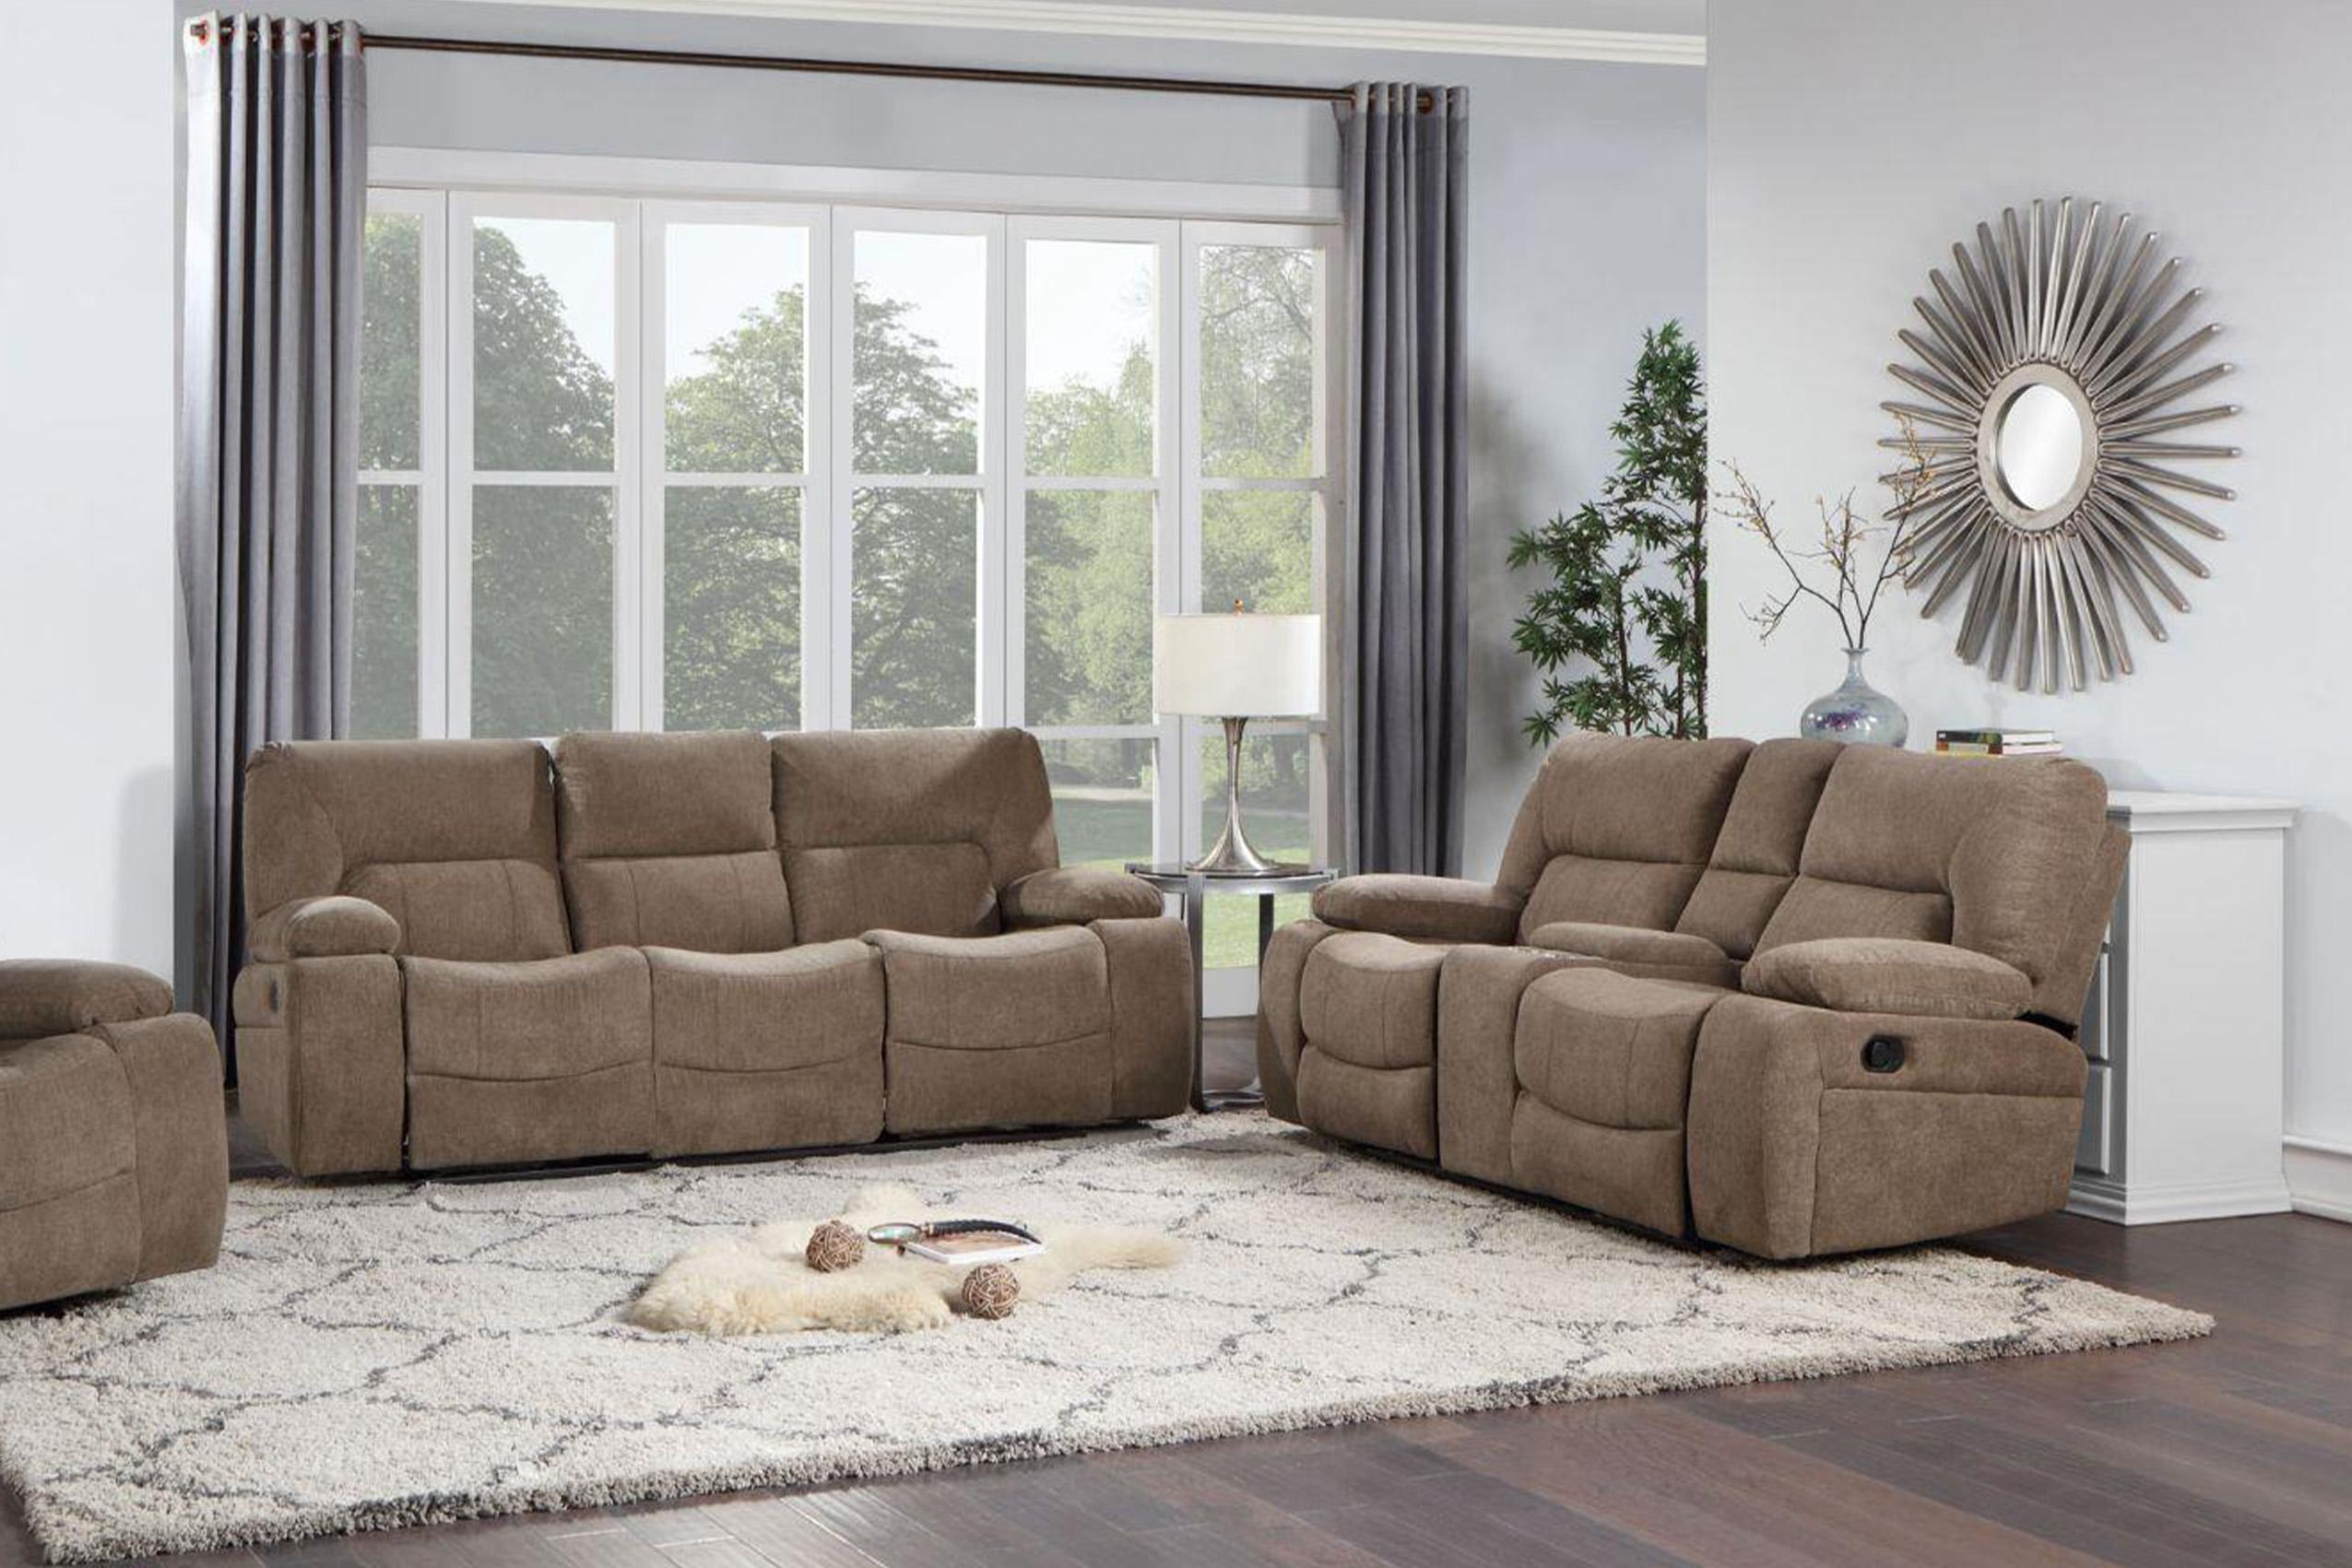 Contemporary, Modern Recliner Sofa Set OHIO-BR OHIO-BR-S-L in Brown Chenille